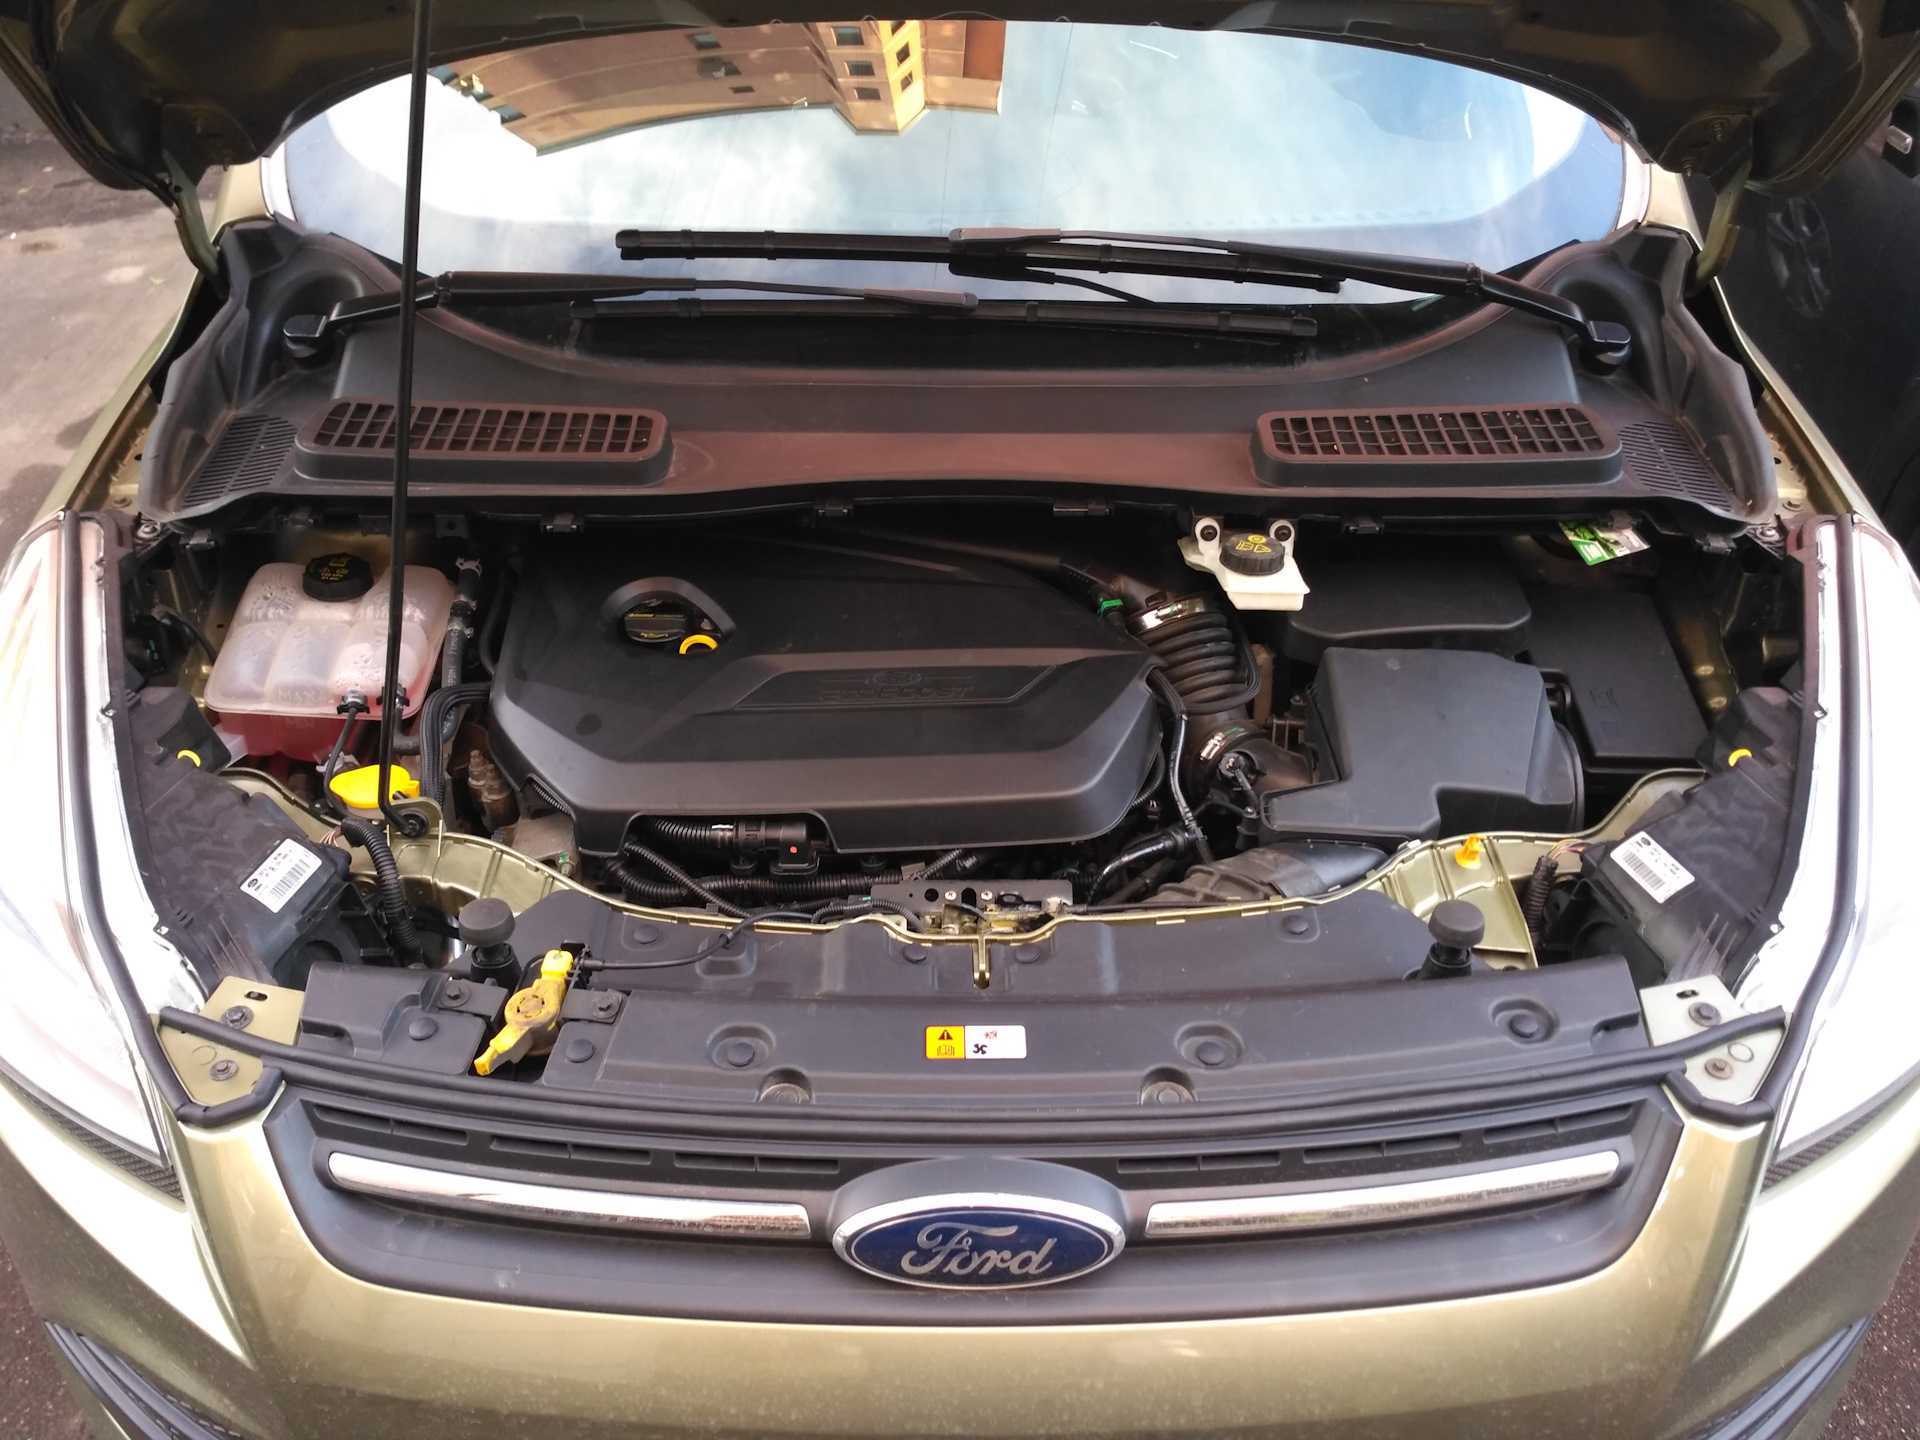 Сегодня в честном обзоре мы рассмотрим Ford Kuga 2 Форд Куга 2 в кузове CBS 2011-2017 модельных годов с бензиновыми двигателями EcoBoost - JQMB 16 16v 150 лс и JTMA 16 16v 182 лс